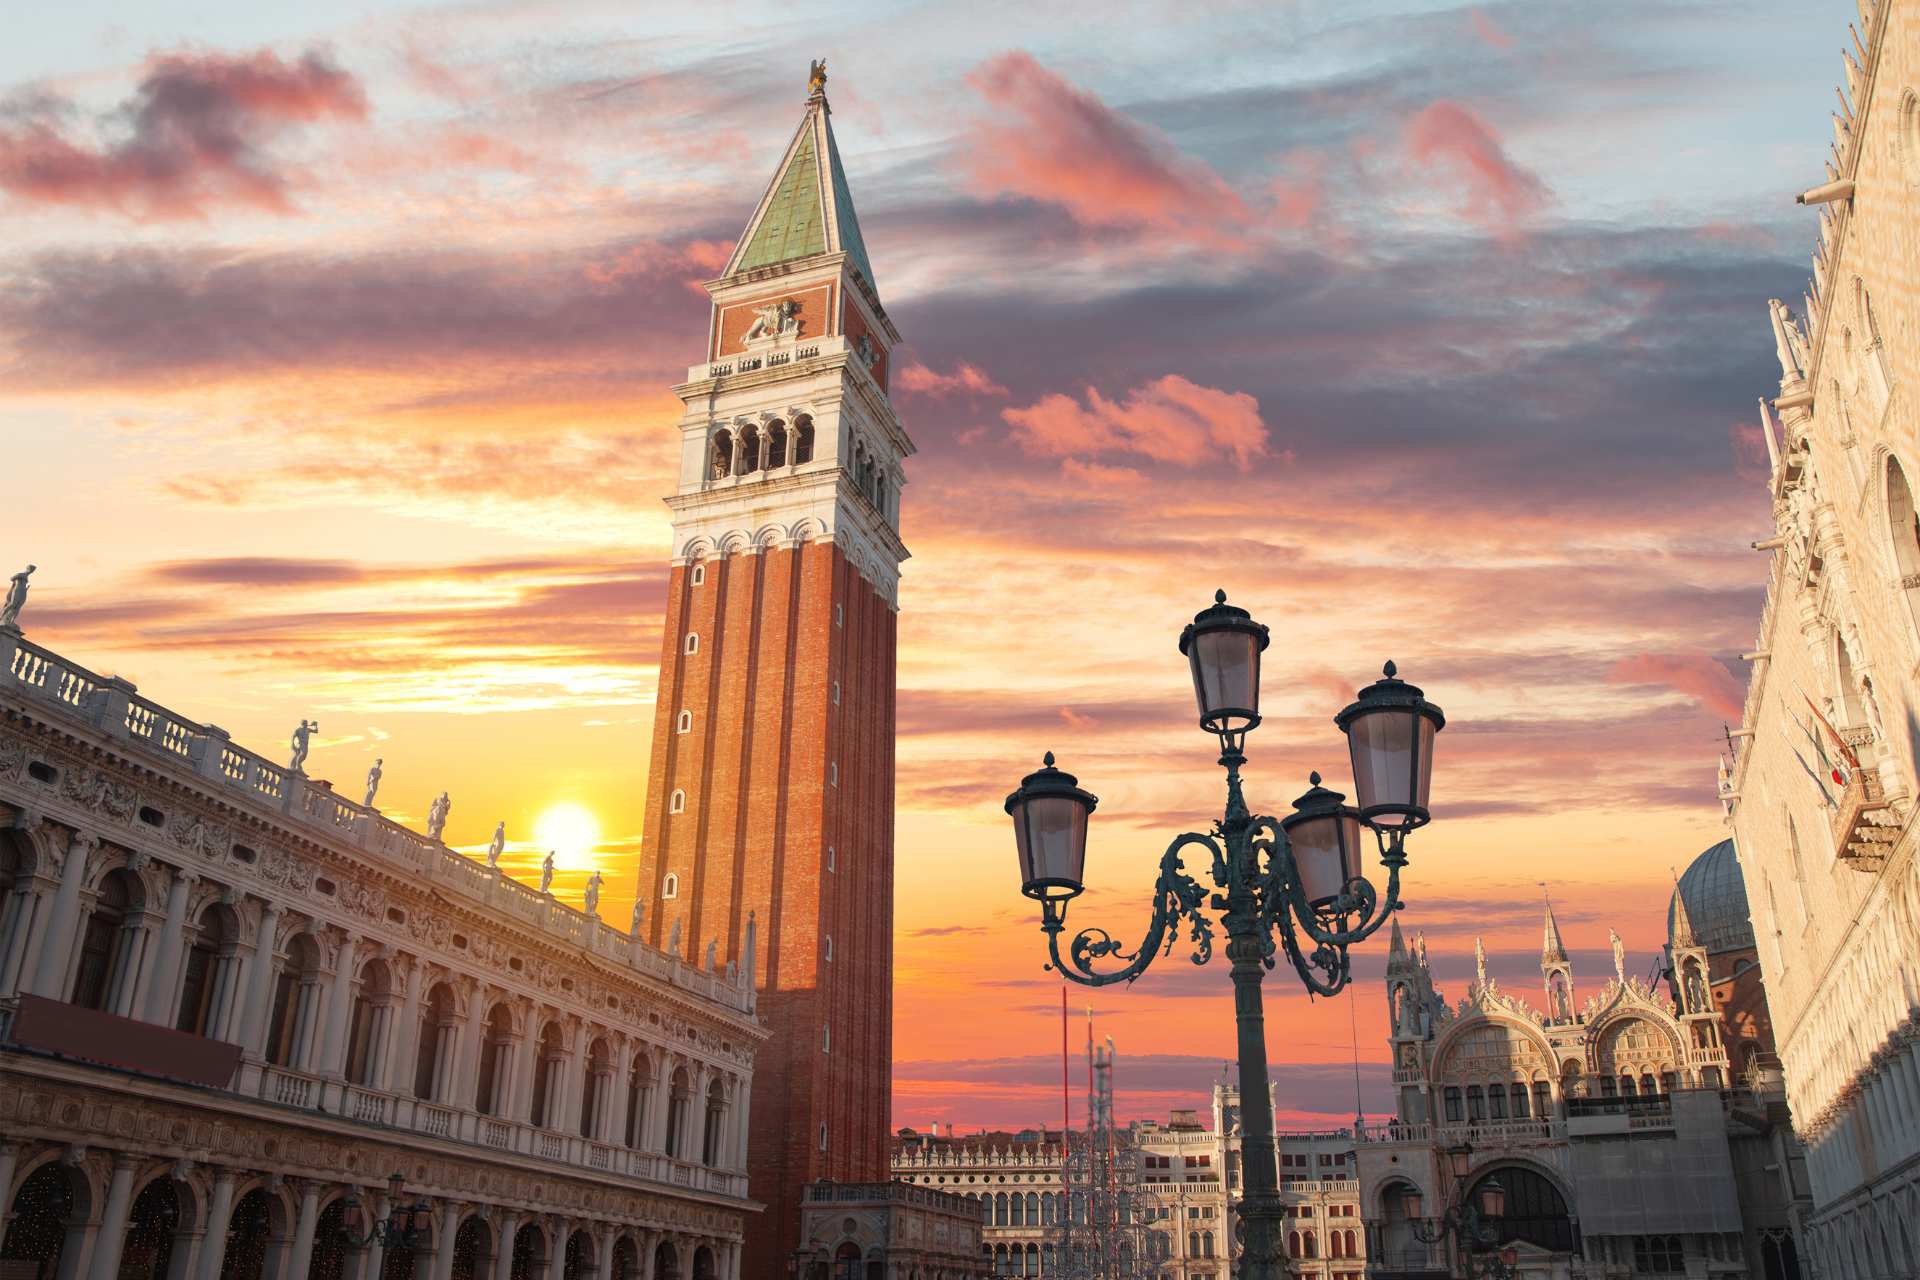 St. Mark's Square in Venice.